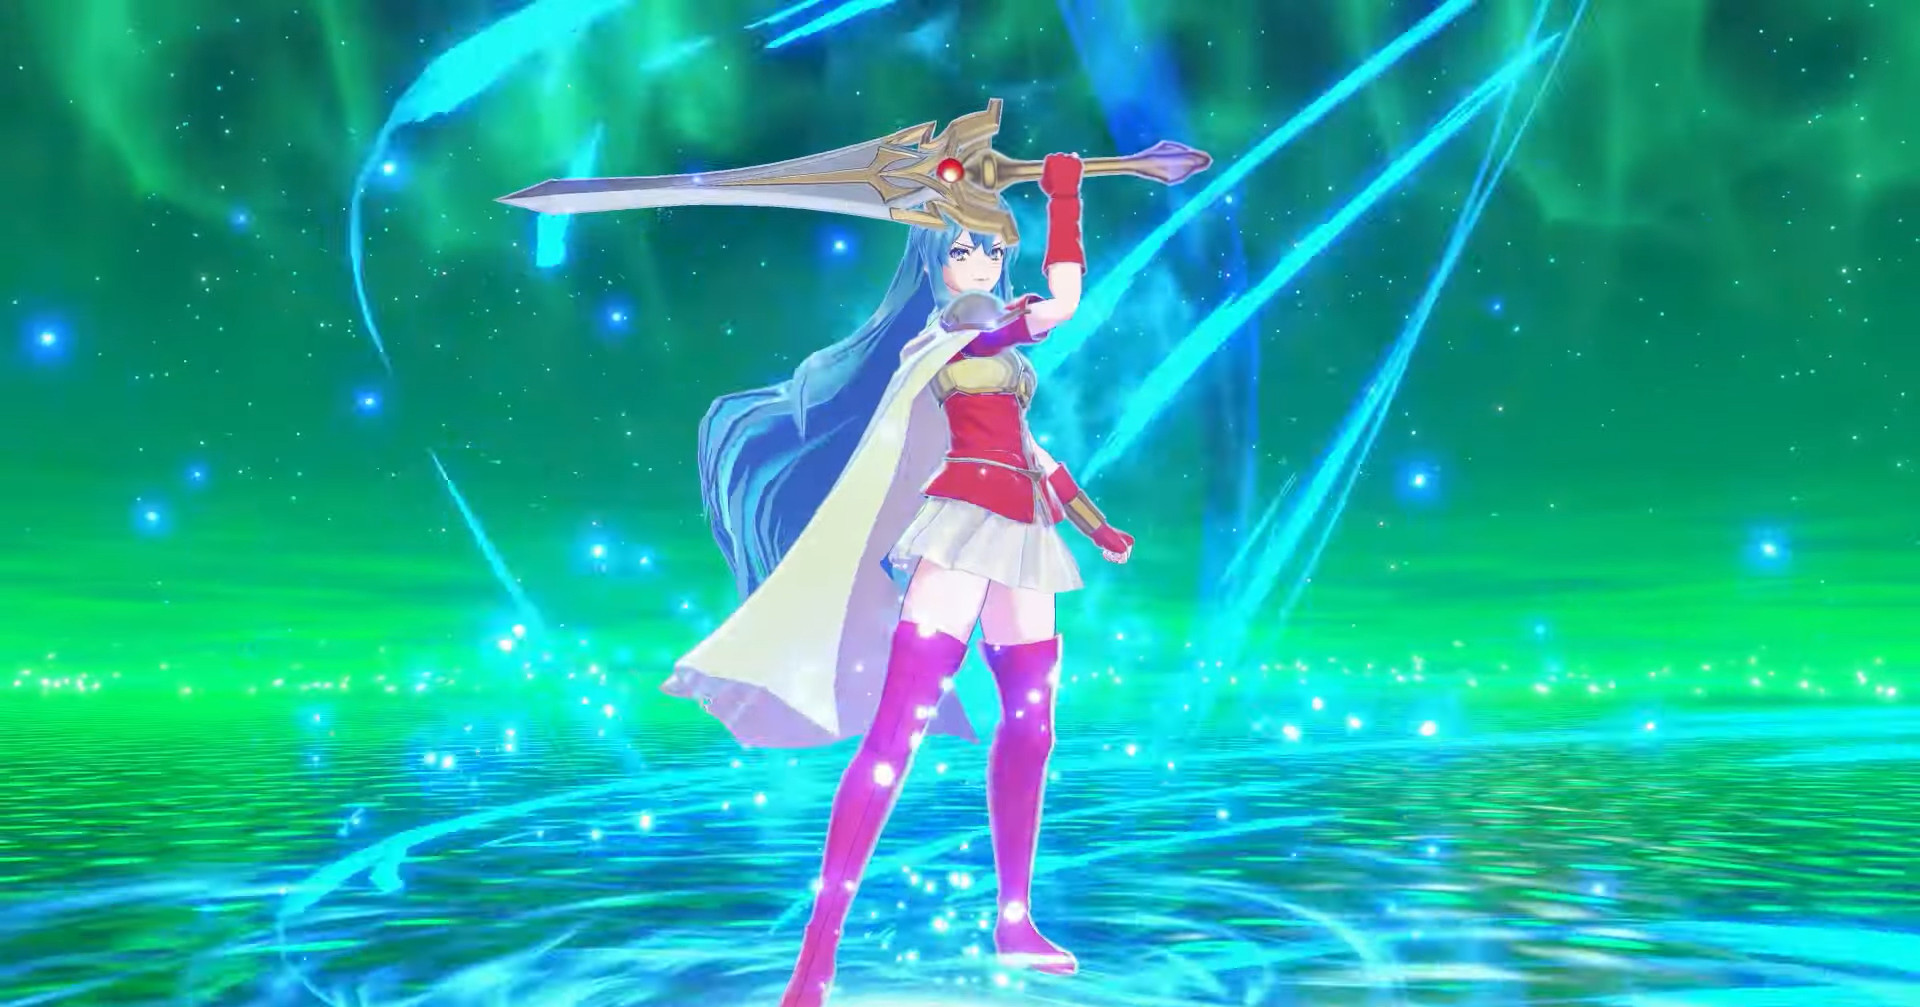 Eirika posando com uma espada.